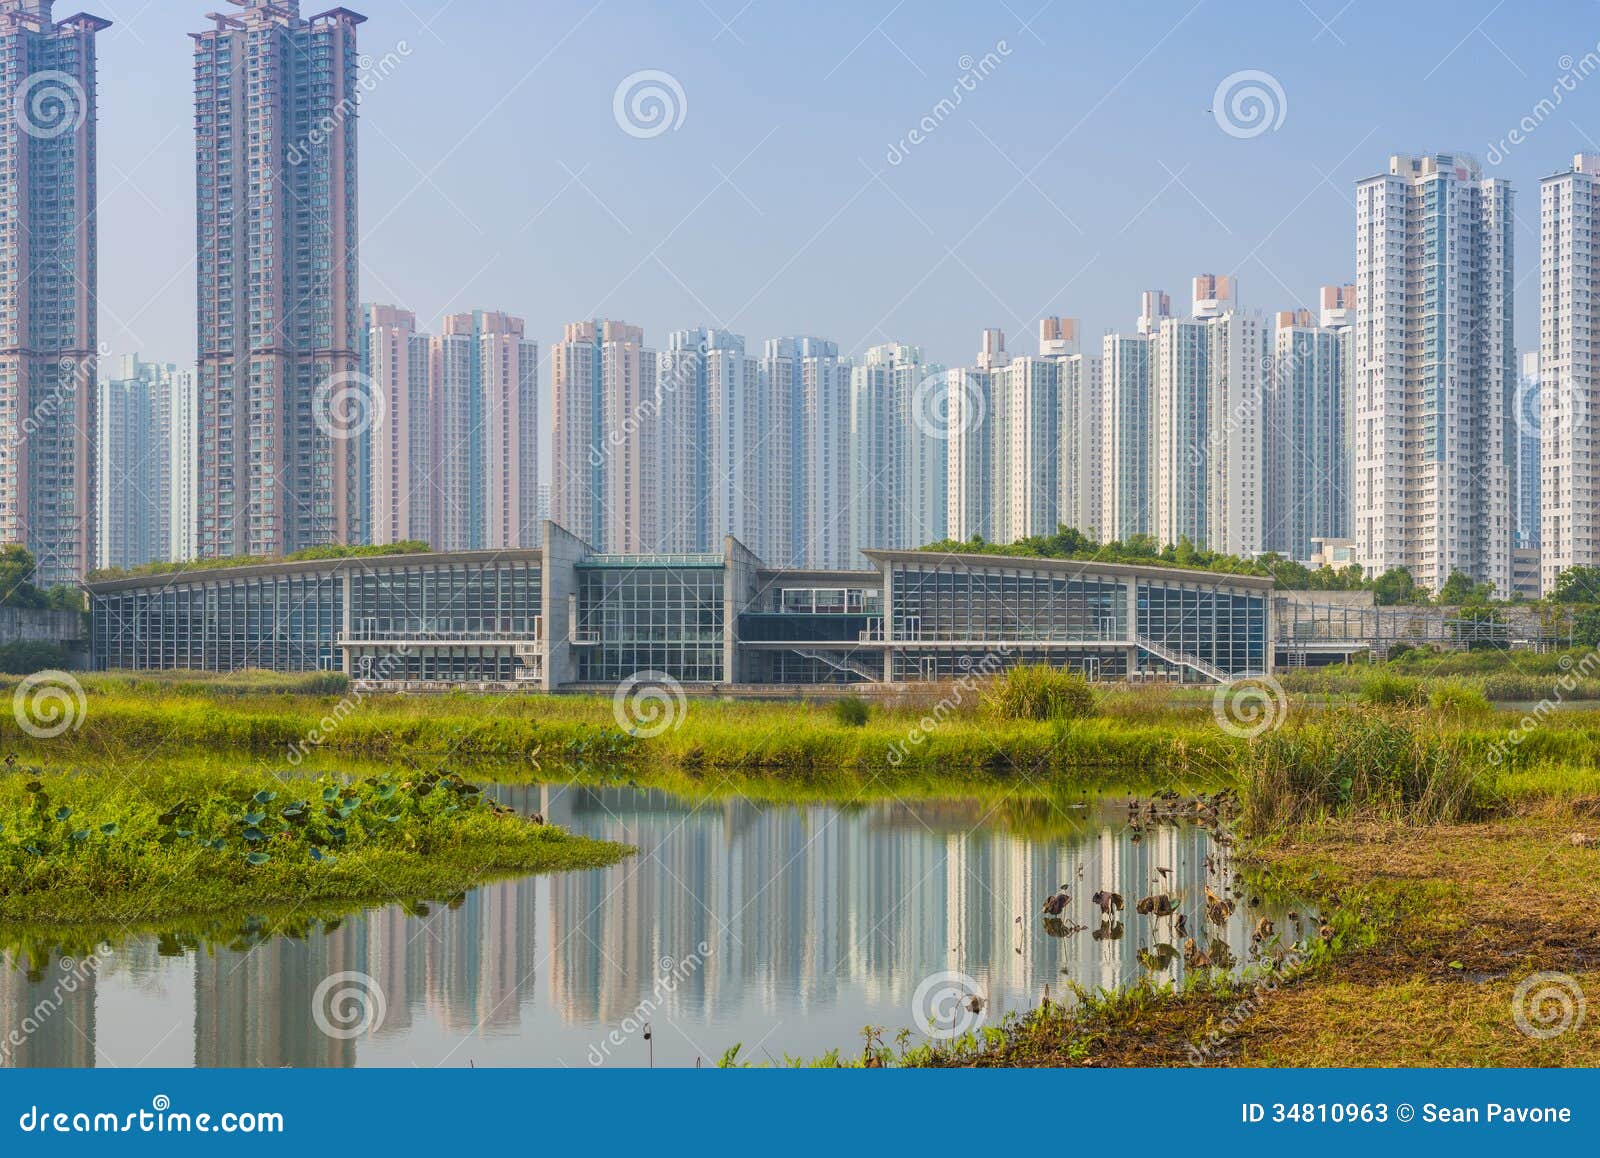 hong kong wetlands park